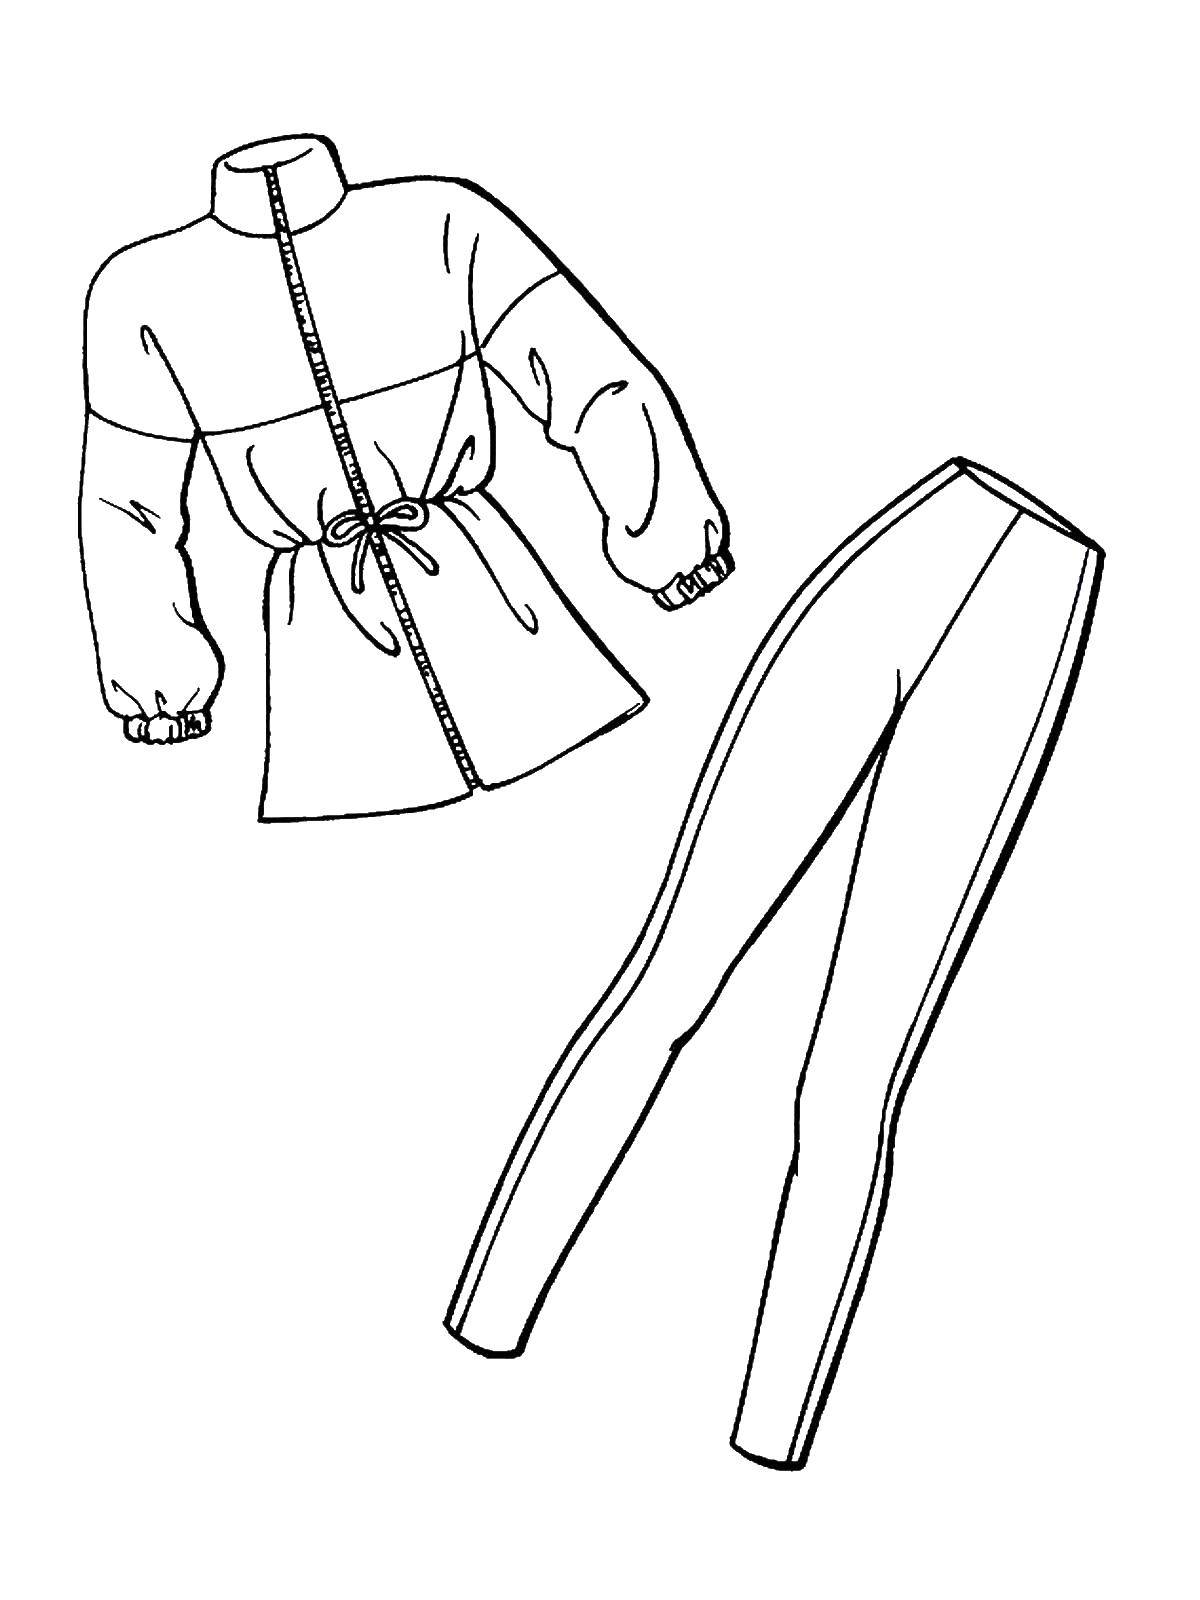 Coloring Kurta and pants. Category Clothing. Tags:  Jacket, pants.